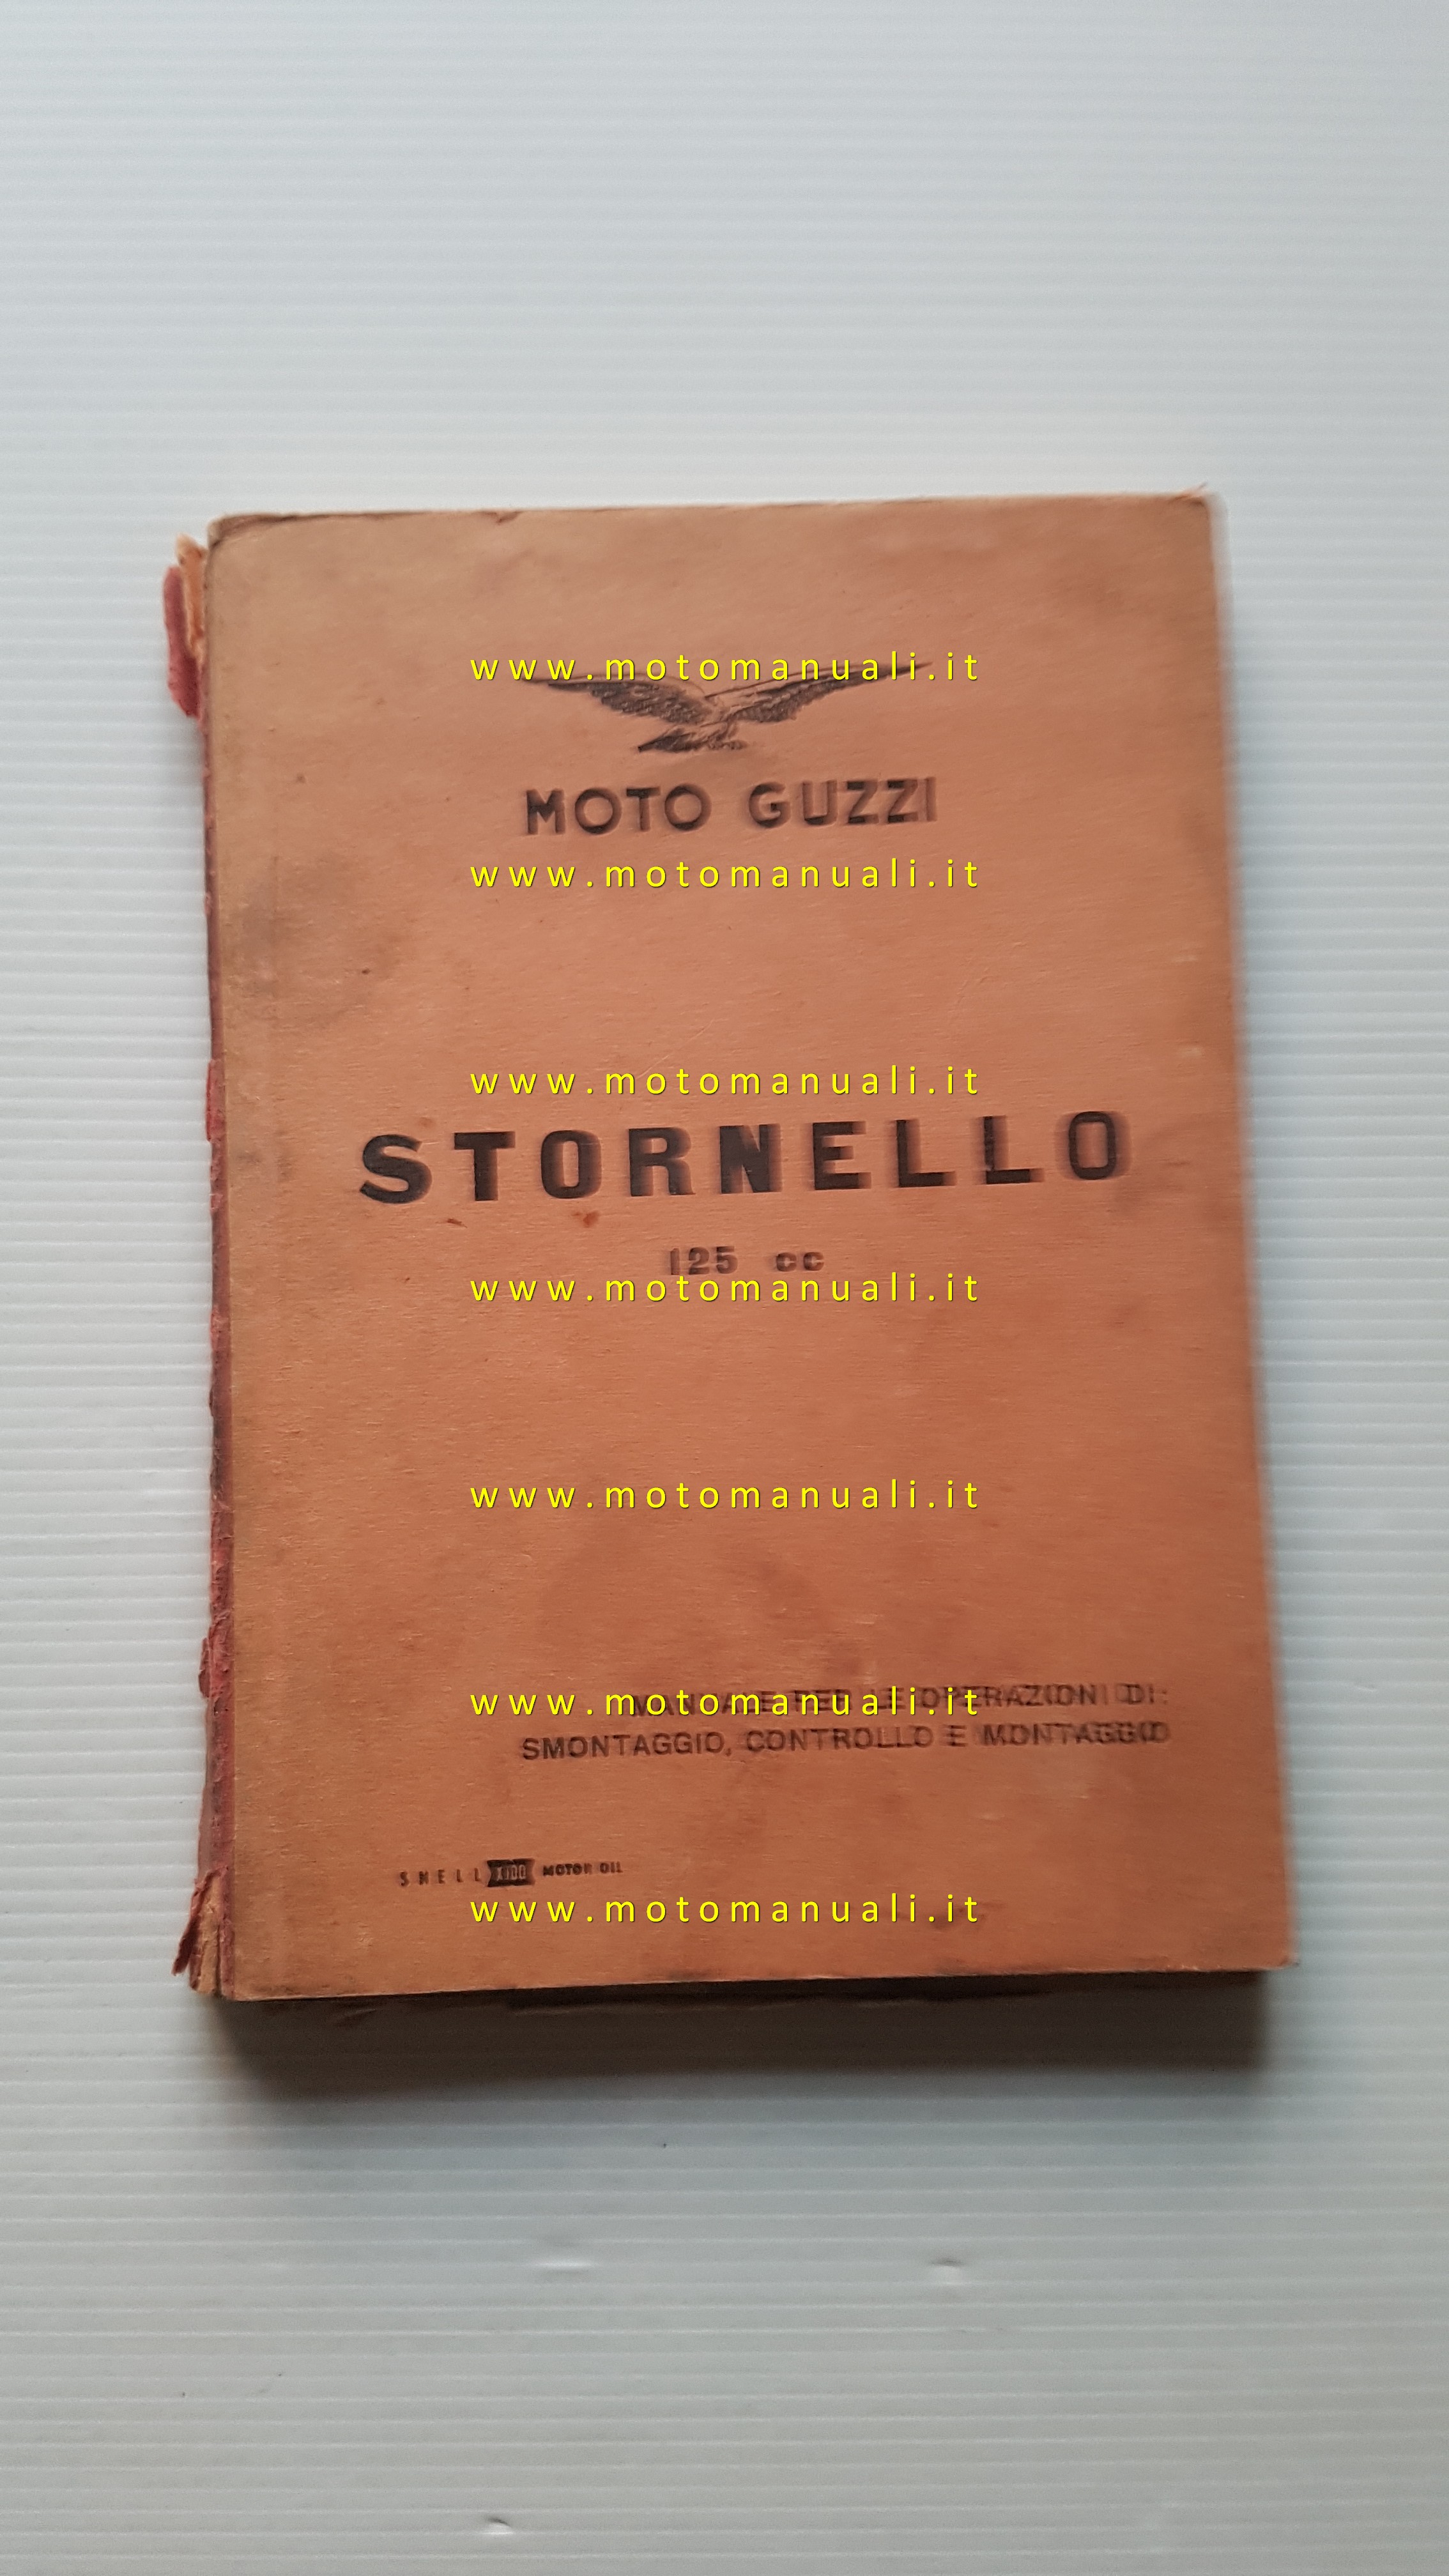 Moto Guzzi Stornello 125 1960 manuale officina originale workshop manual